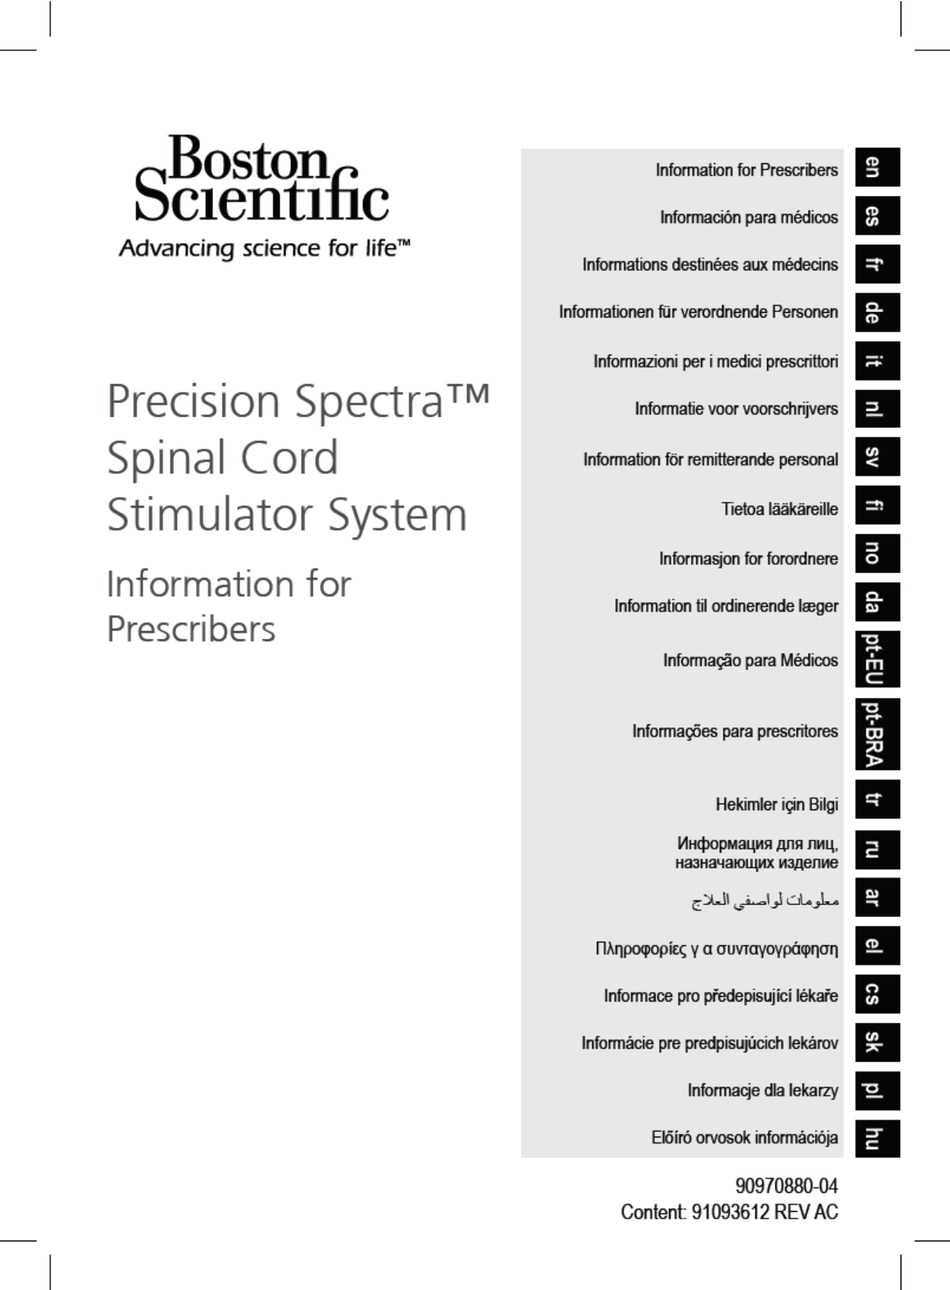 Precision Spectra - Boston Scientific